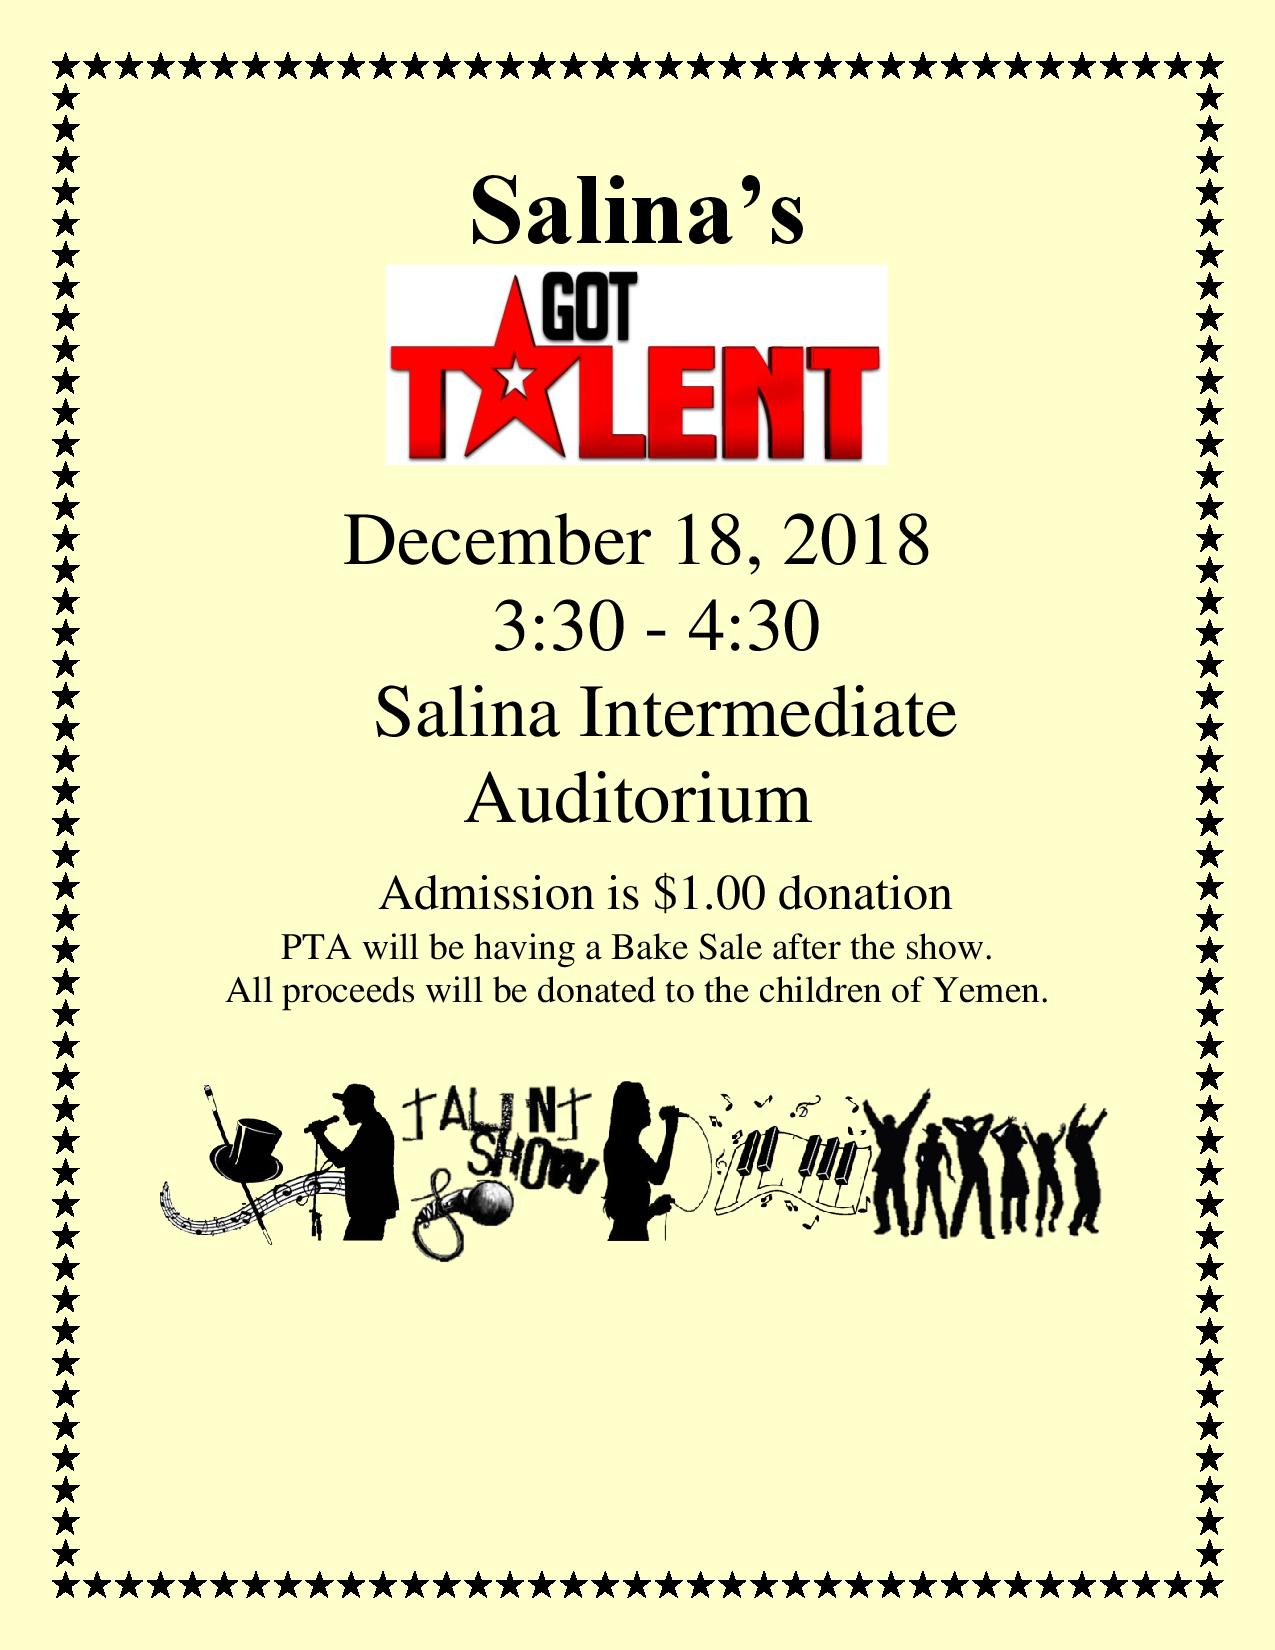 Salina’s Got Talent